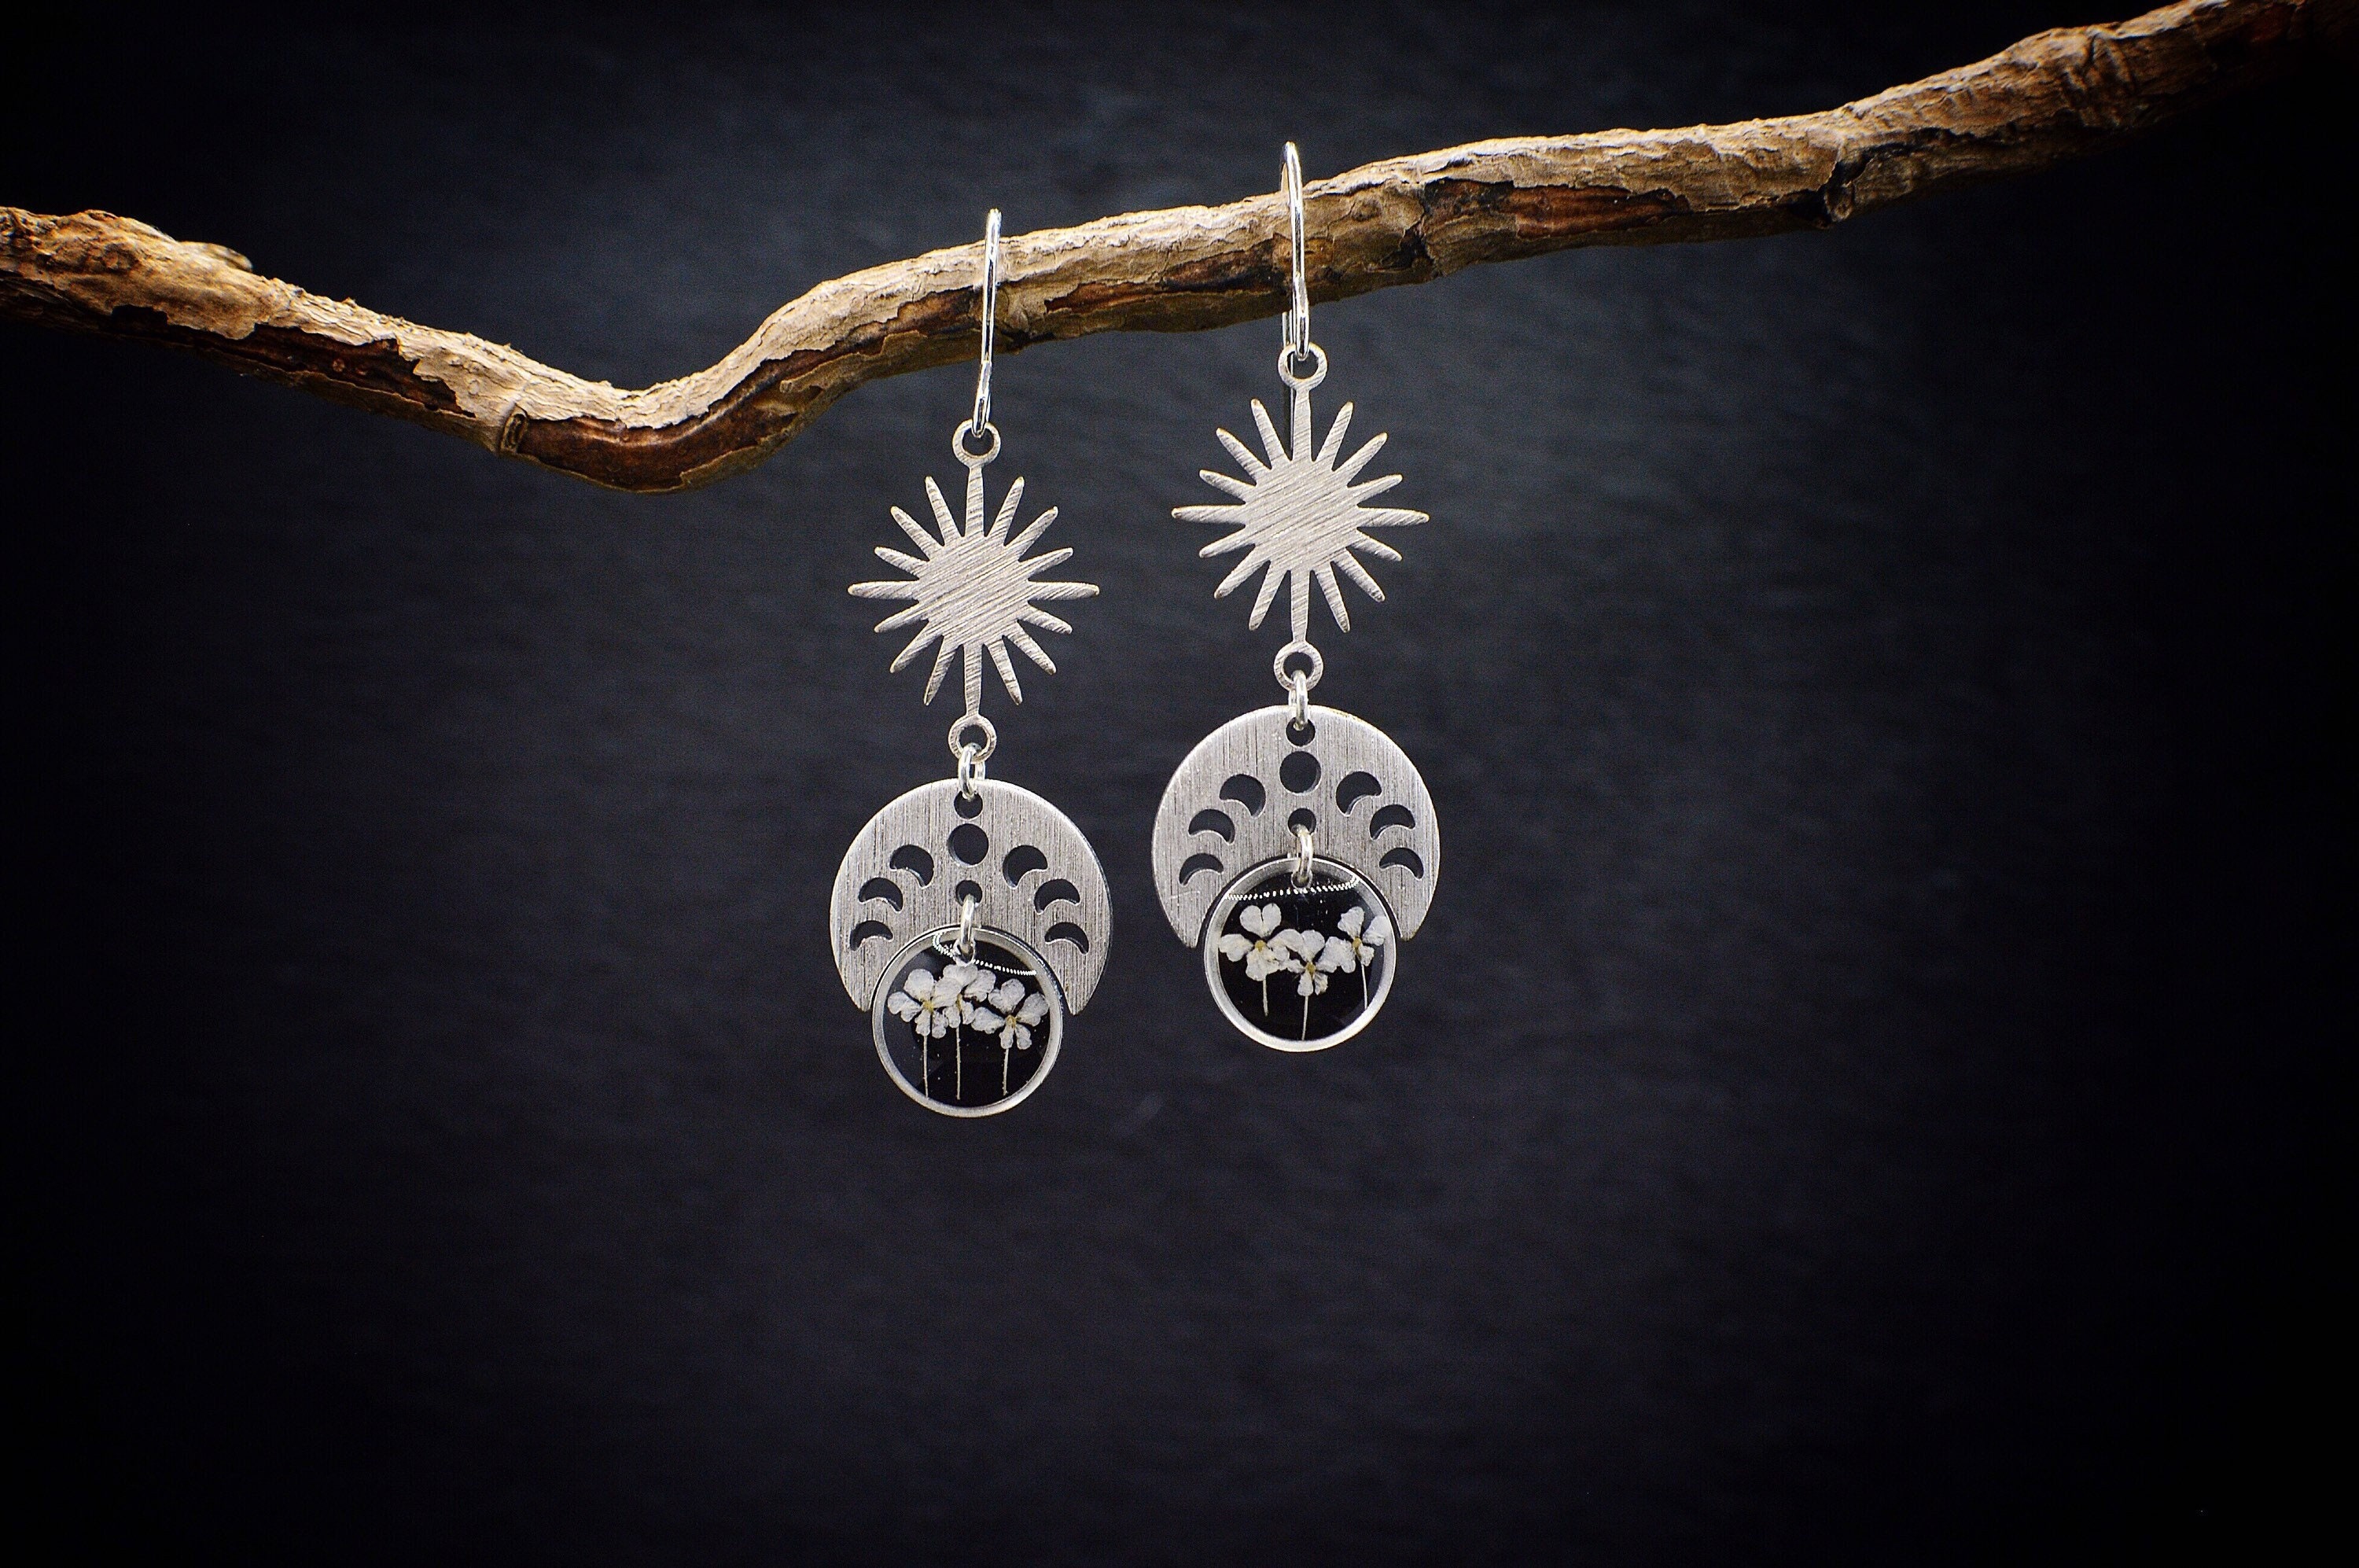 Moon Phase Flower Earrings/Pressed Earrings/Celestial Jewelry/Lunar Earrings